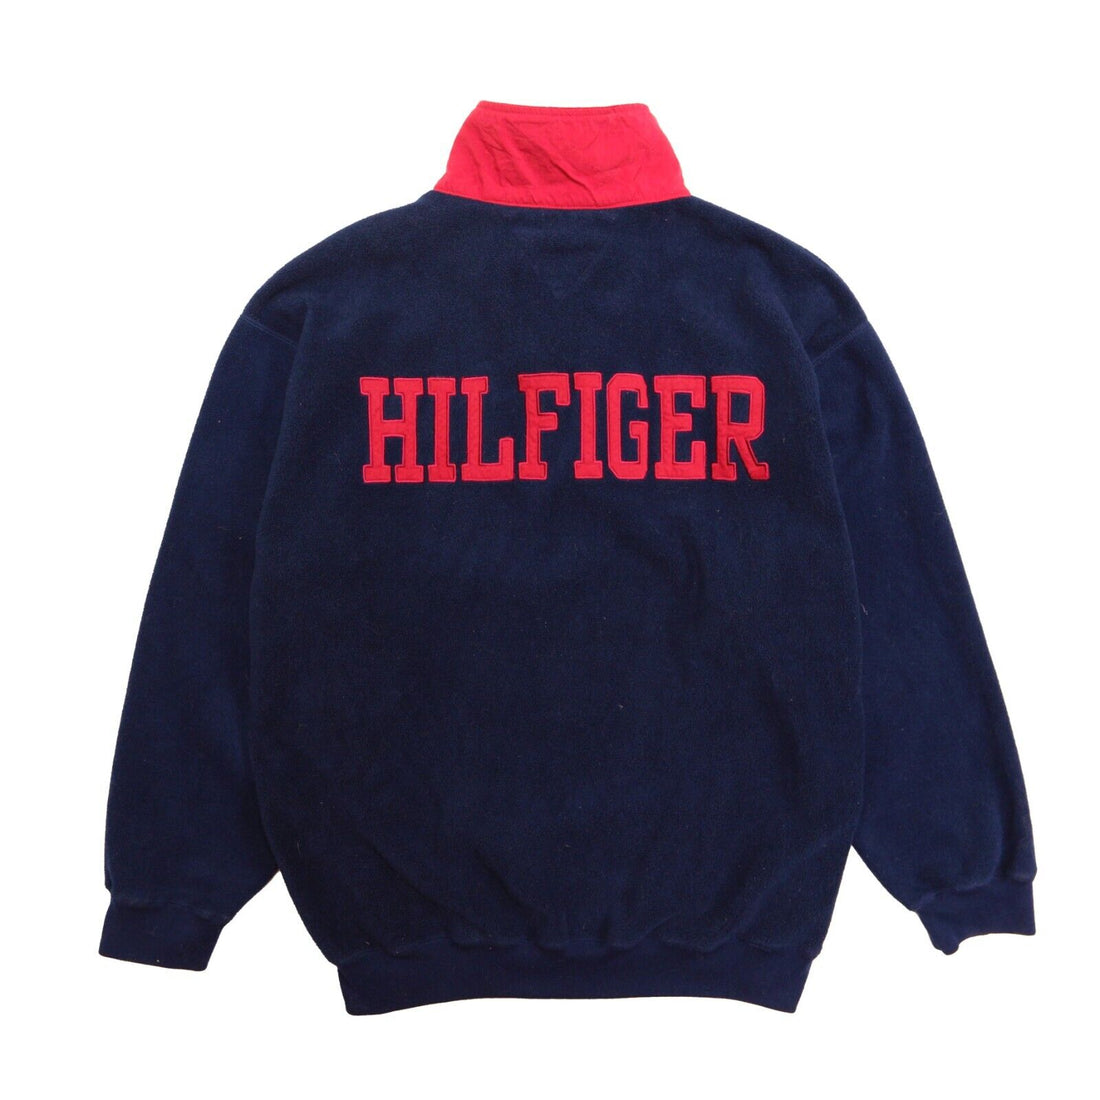 Vintage Tommy Hilfiger Flag Fleece Jacket Size XL 1/4 Zip Pullover